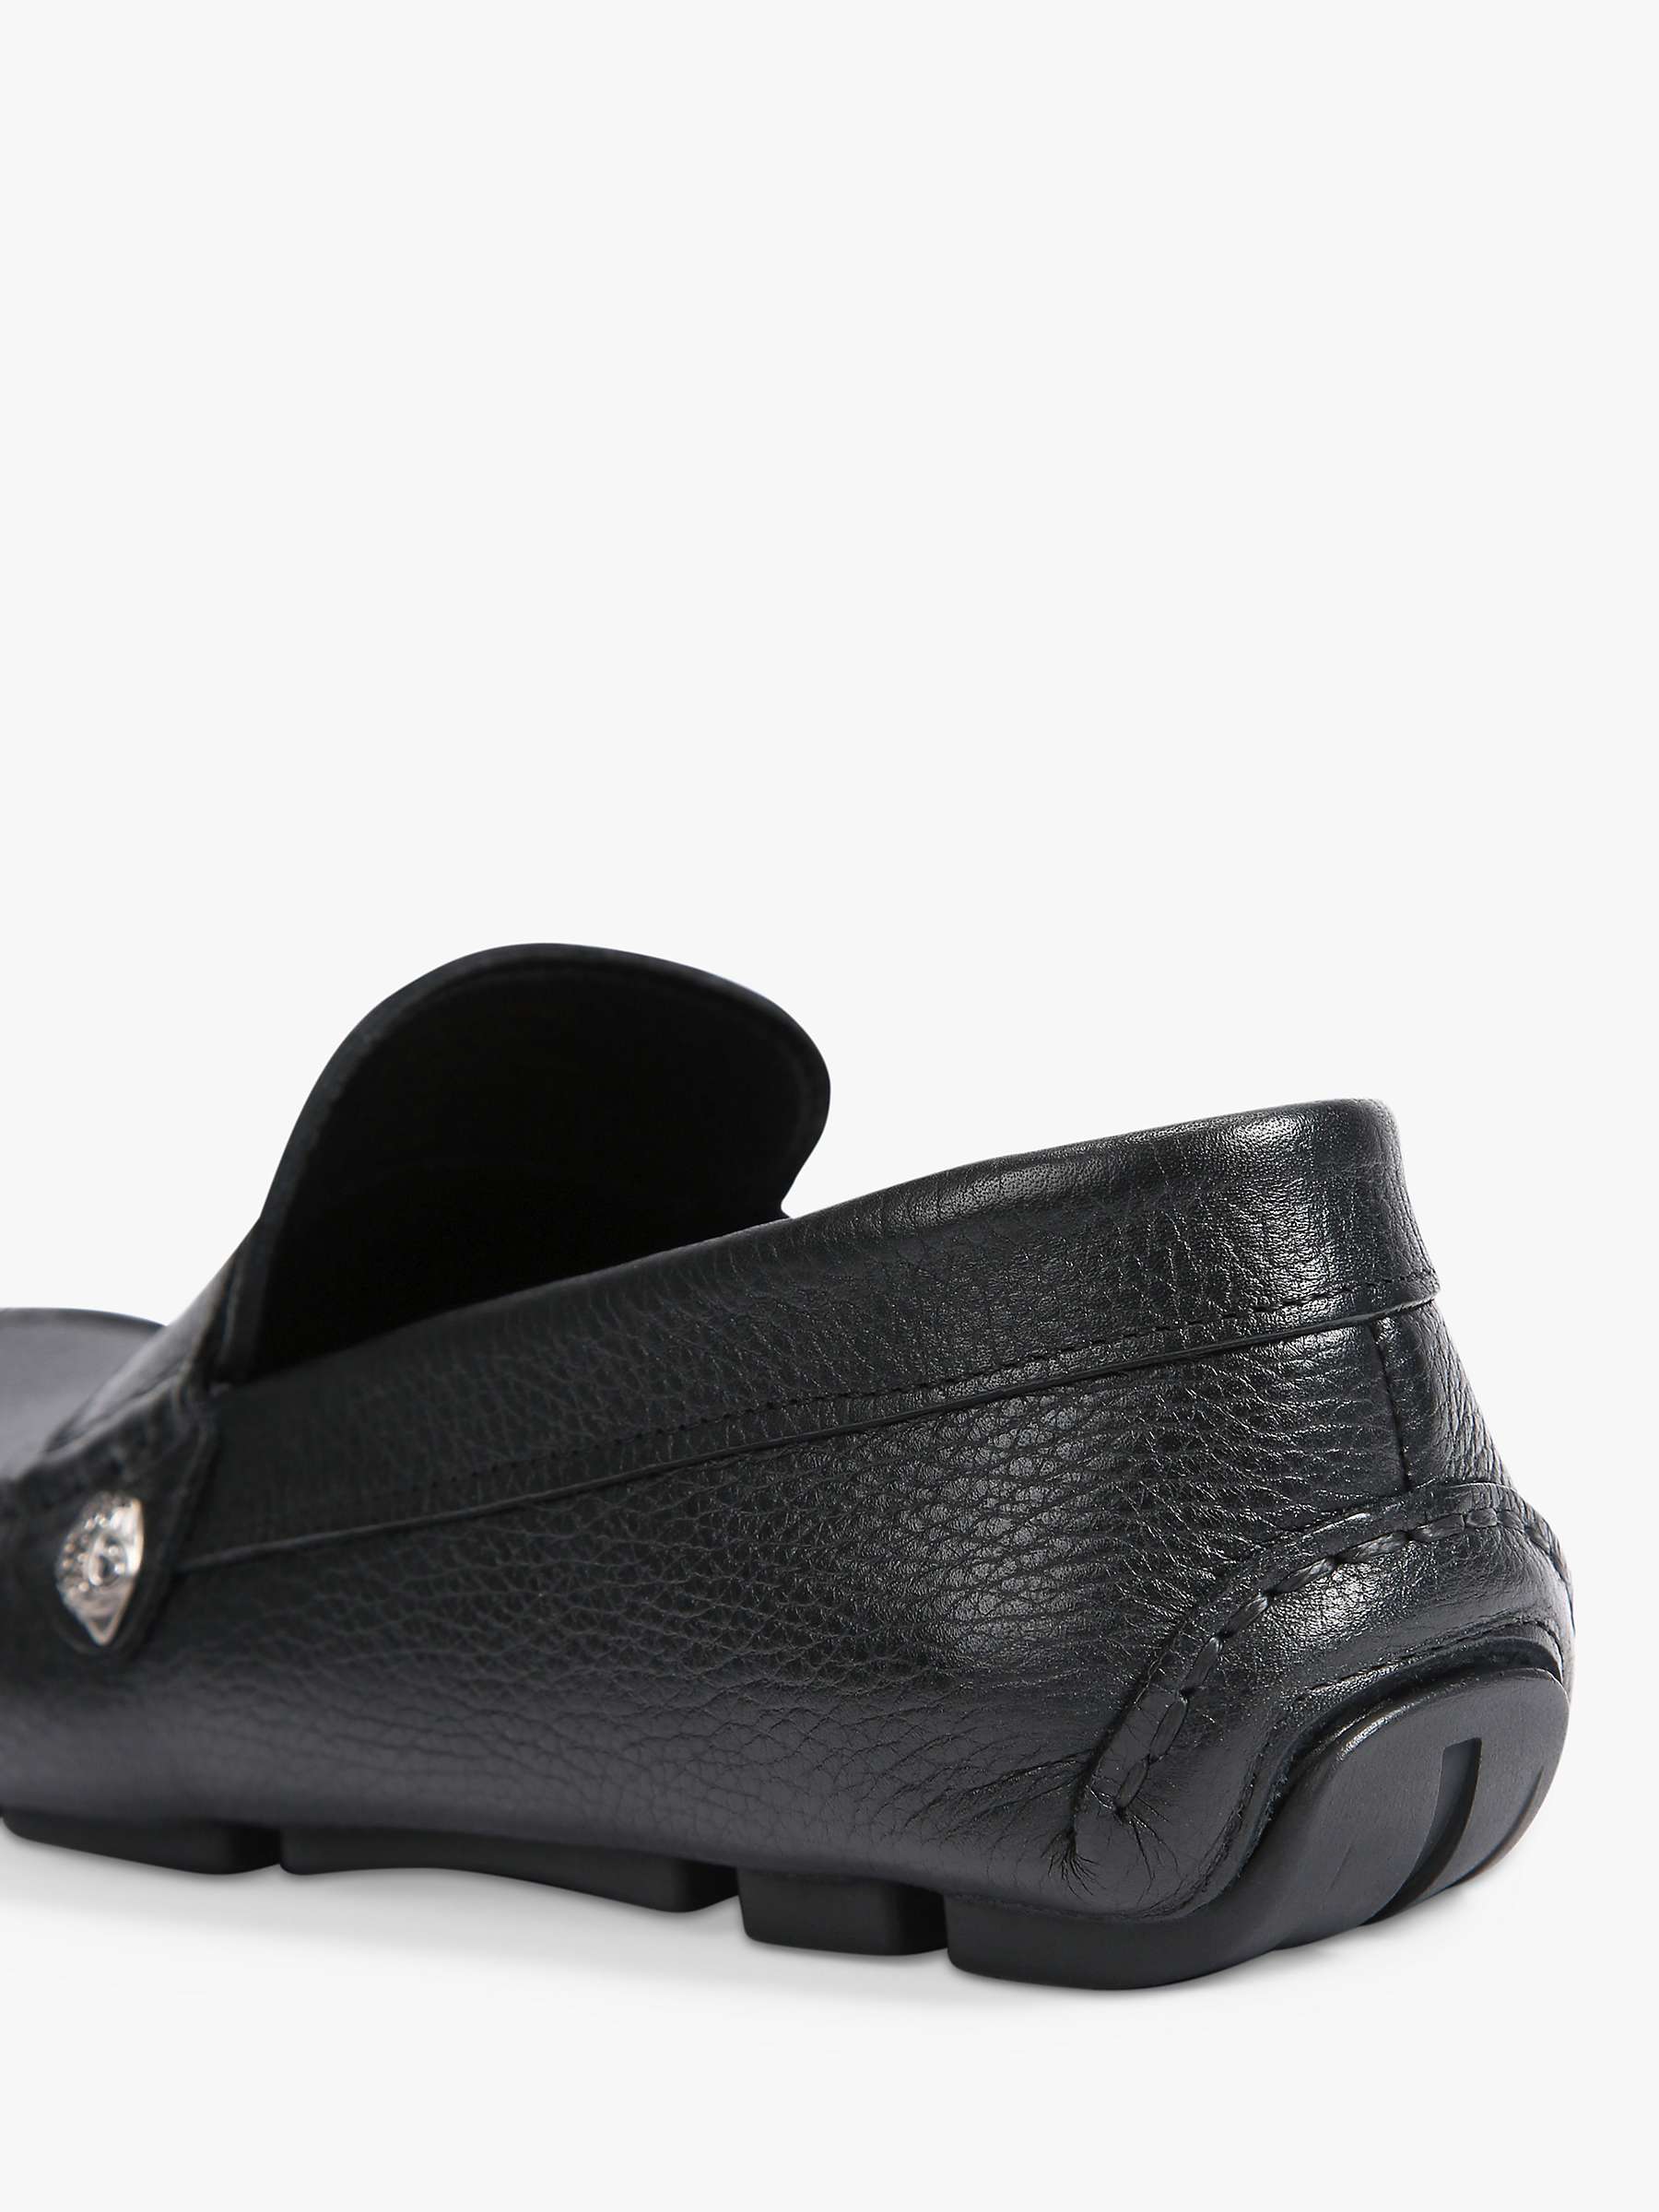 Buy Kurt Geiger London Stirling Leather Loafers, Black Online at johnlewis.com